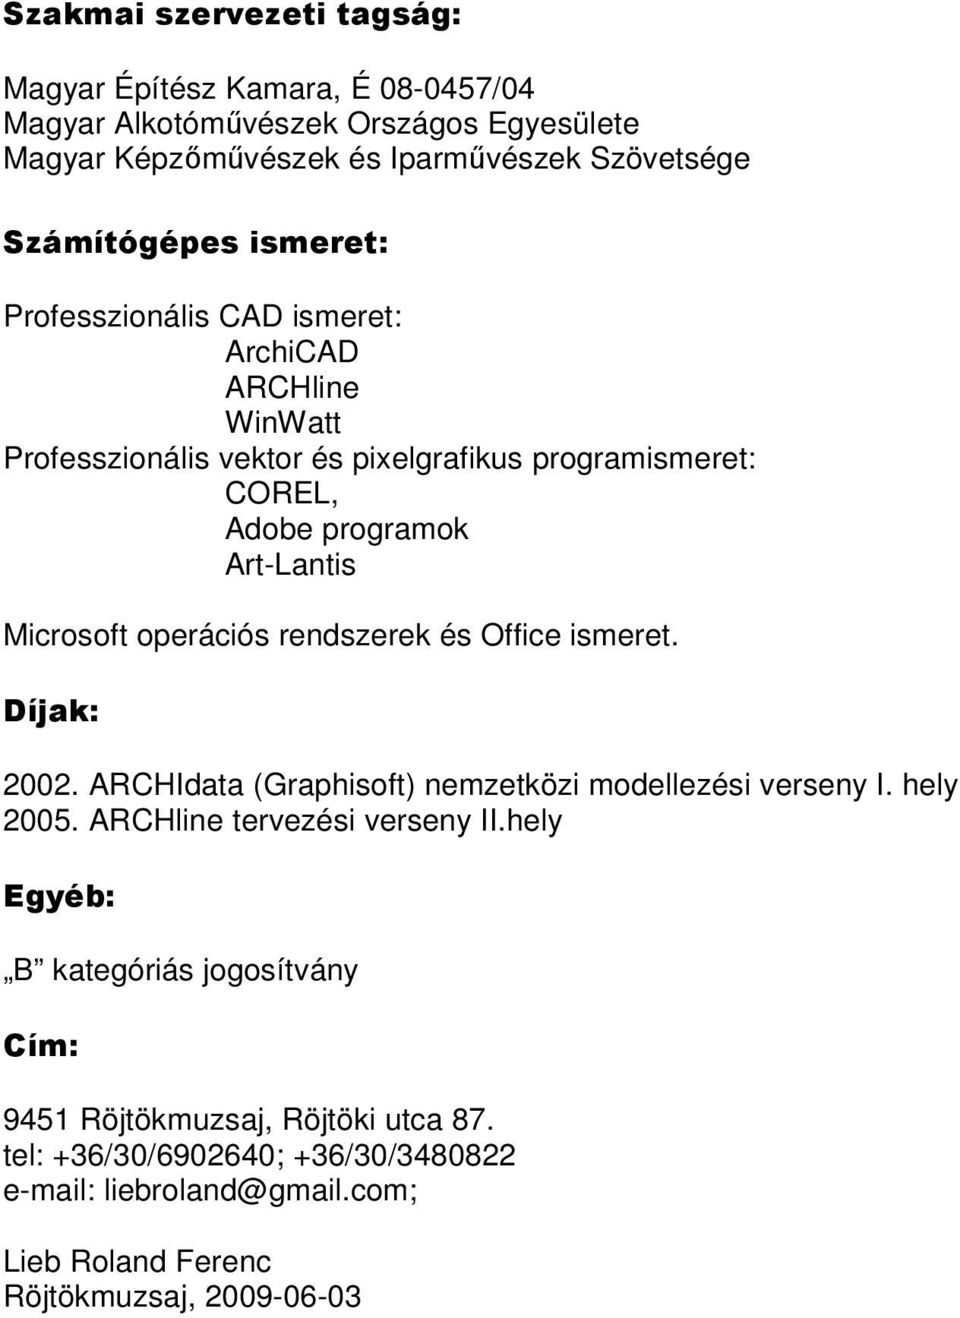 operációs rendszerek és Office ismeret. Díjak: 2002. ARCHIdata (Graphisoft) nemzetközi modellezési verseny I. hely 2005. ARCHline tervezési verseny II.